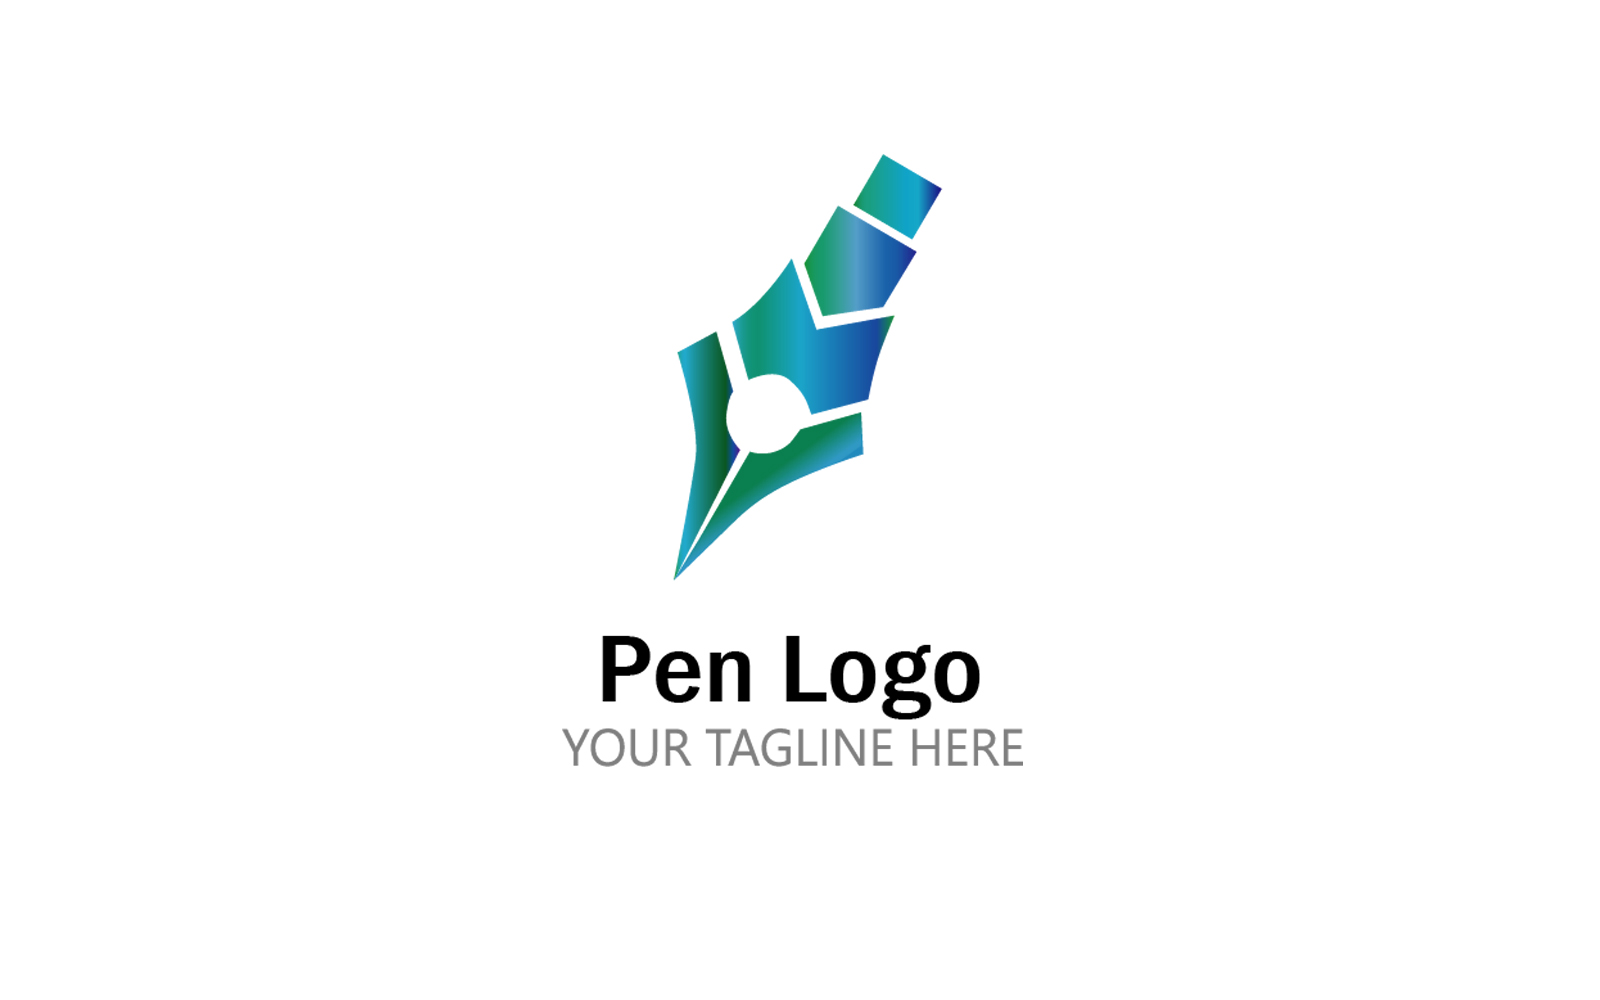 Creative rocket pen tool logo design template Vector Image